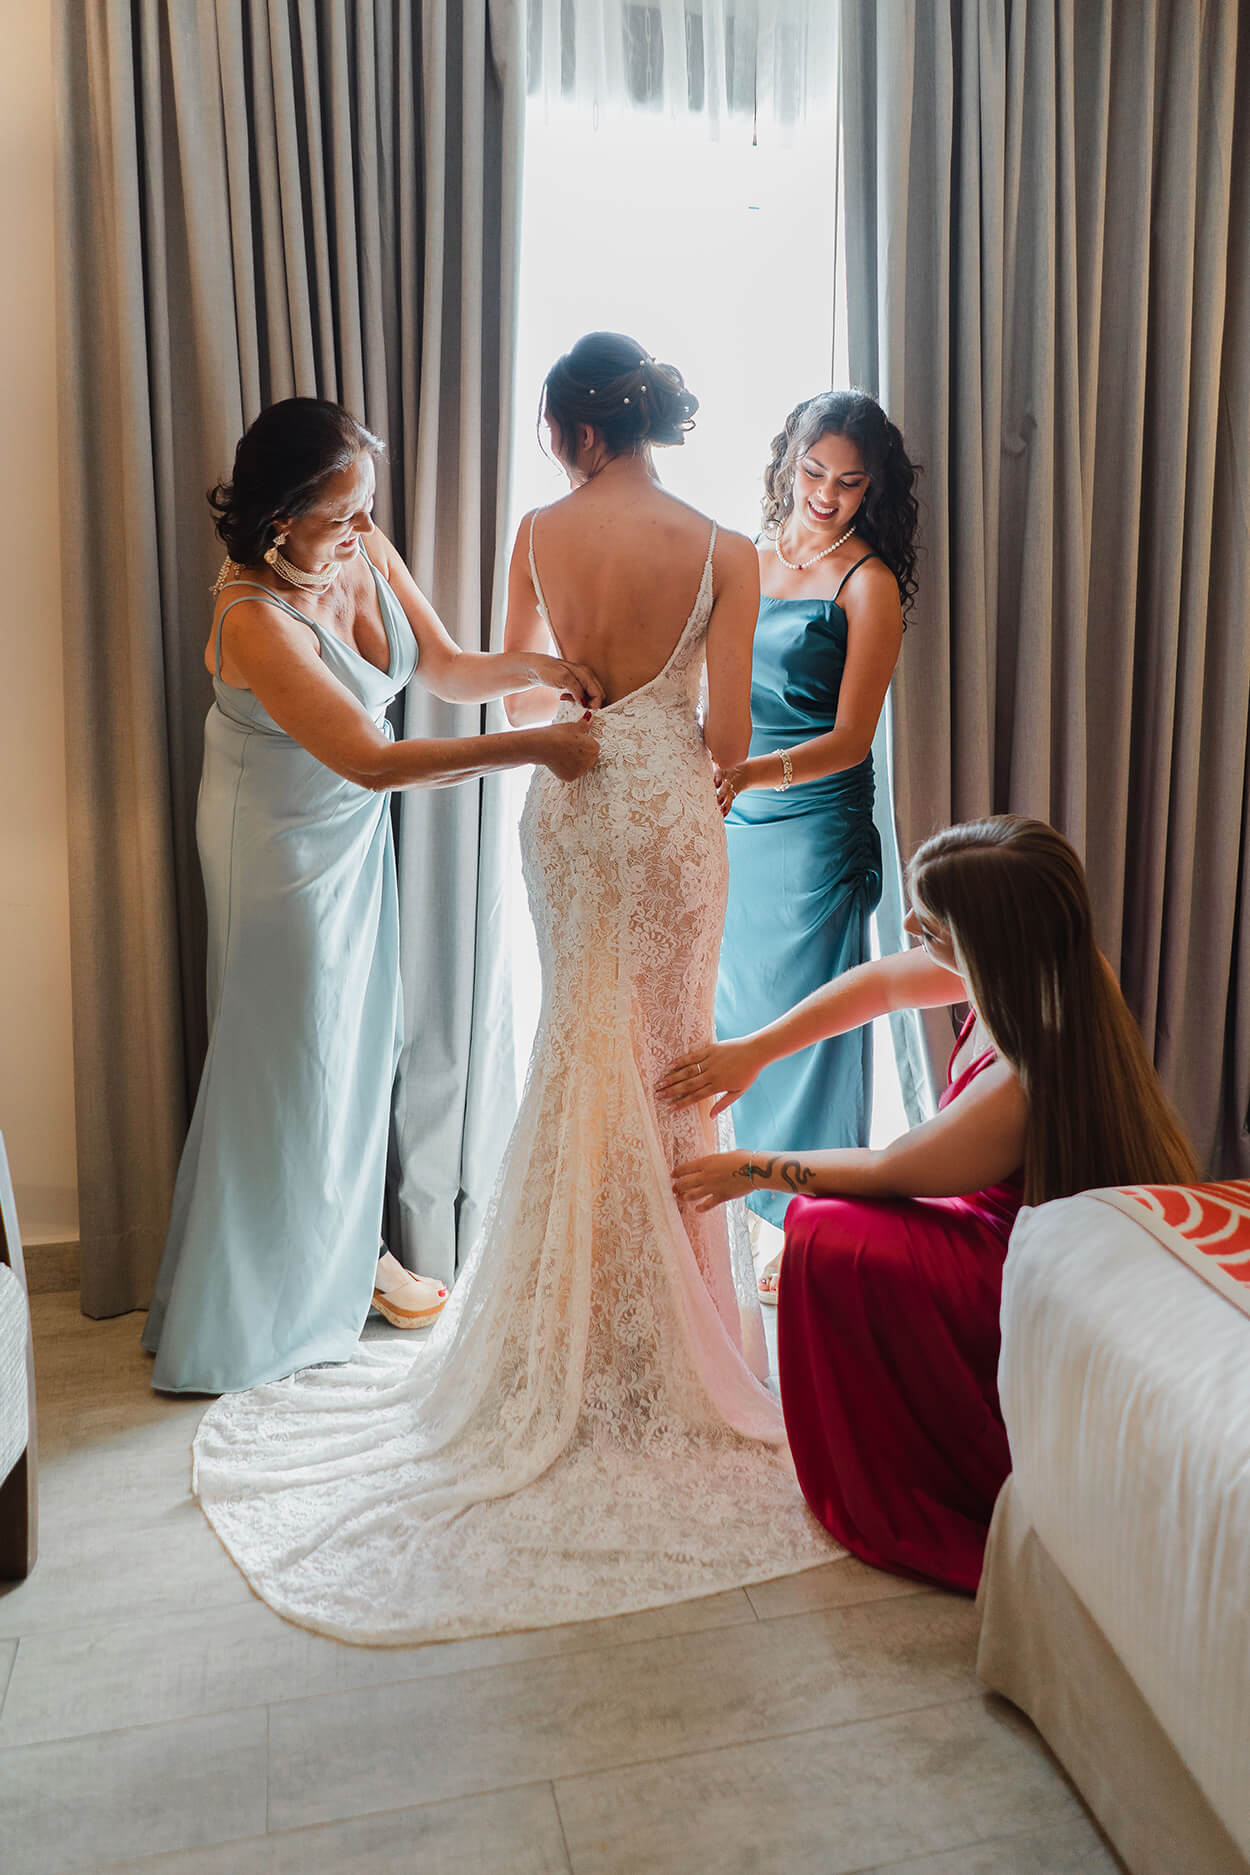 Mulheres arrumando o vestido da noiva